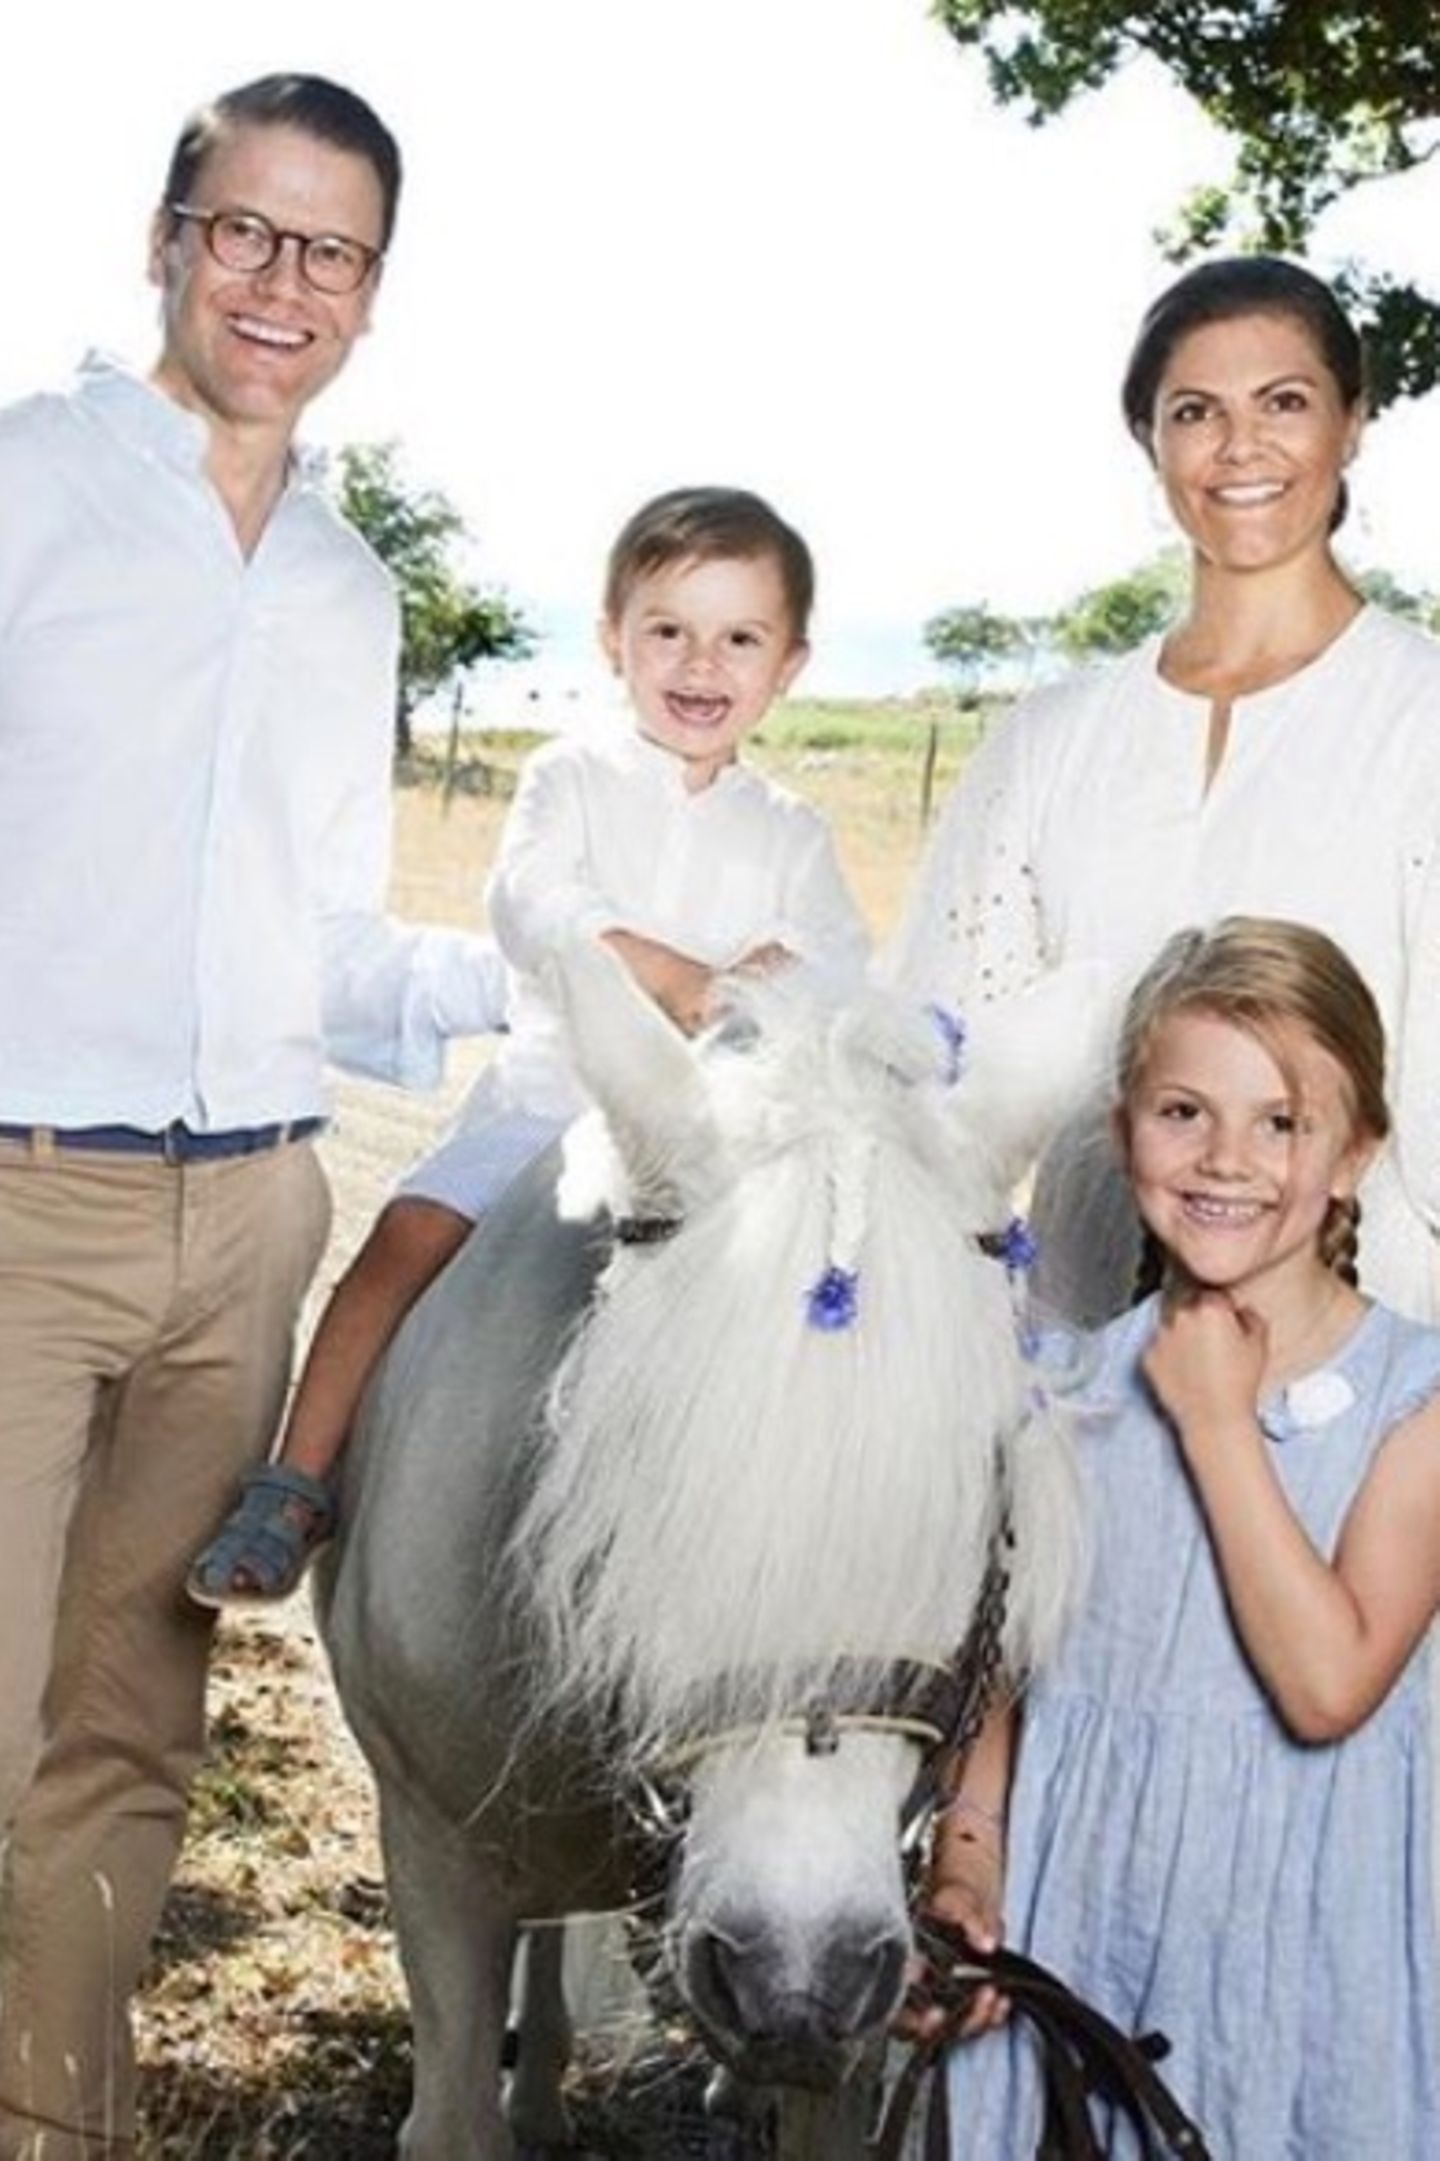 20. August 2018   Royal-Fans können sich wieder freuen: Jeden Sommer teilen Prinzessin Victoria und Prinz Daniel zauberhafte Familienfotos. Dabei sind der fröhliche Oscar und seine Schwester Estelle selbstverständlich die kleinen, großen Stars ...